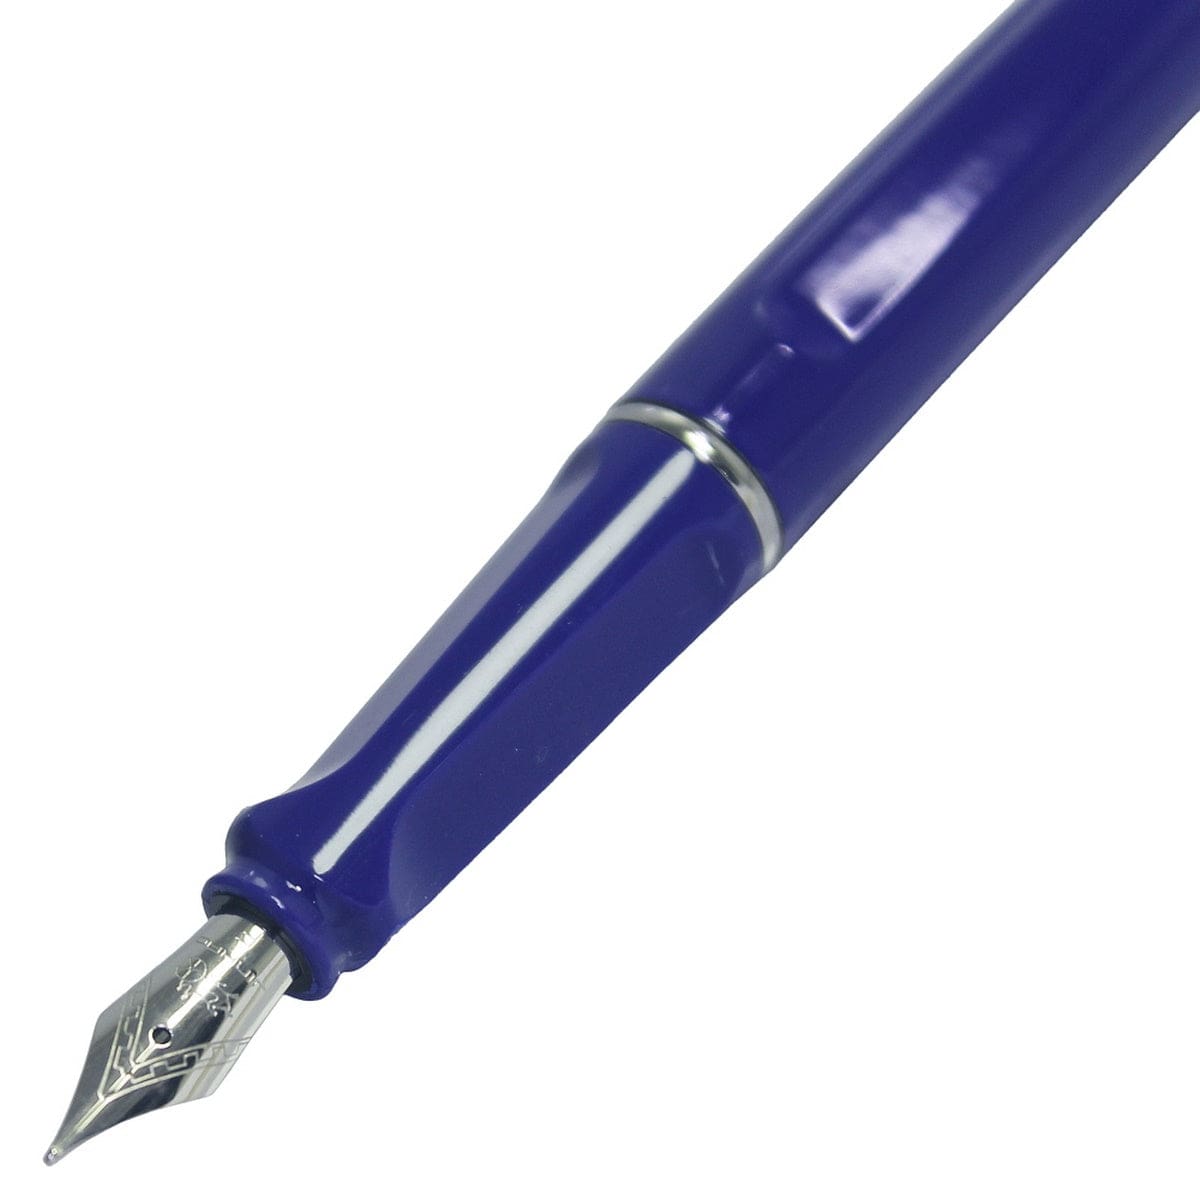 jags-mumbai Fountain pens Classic Elegance: Fountain Pen Blue 599-1FPBL